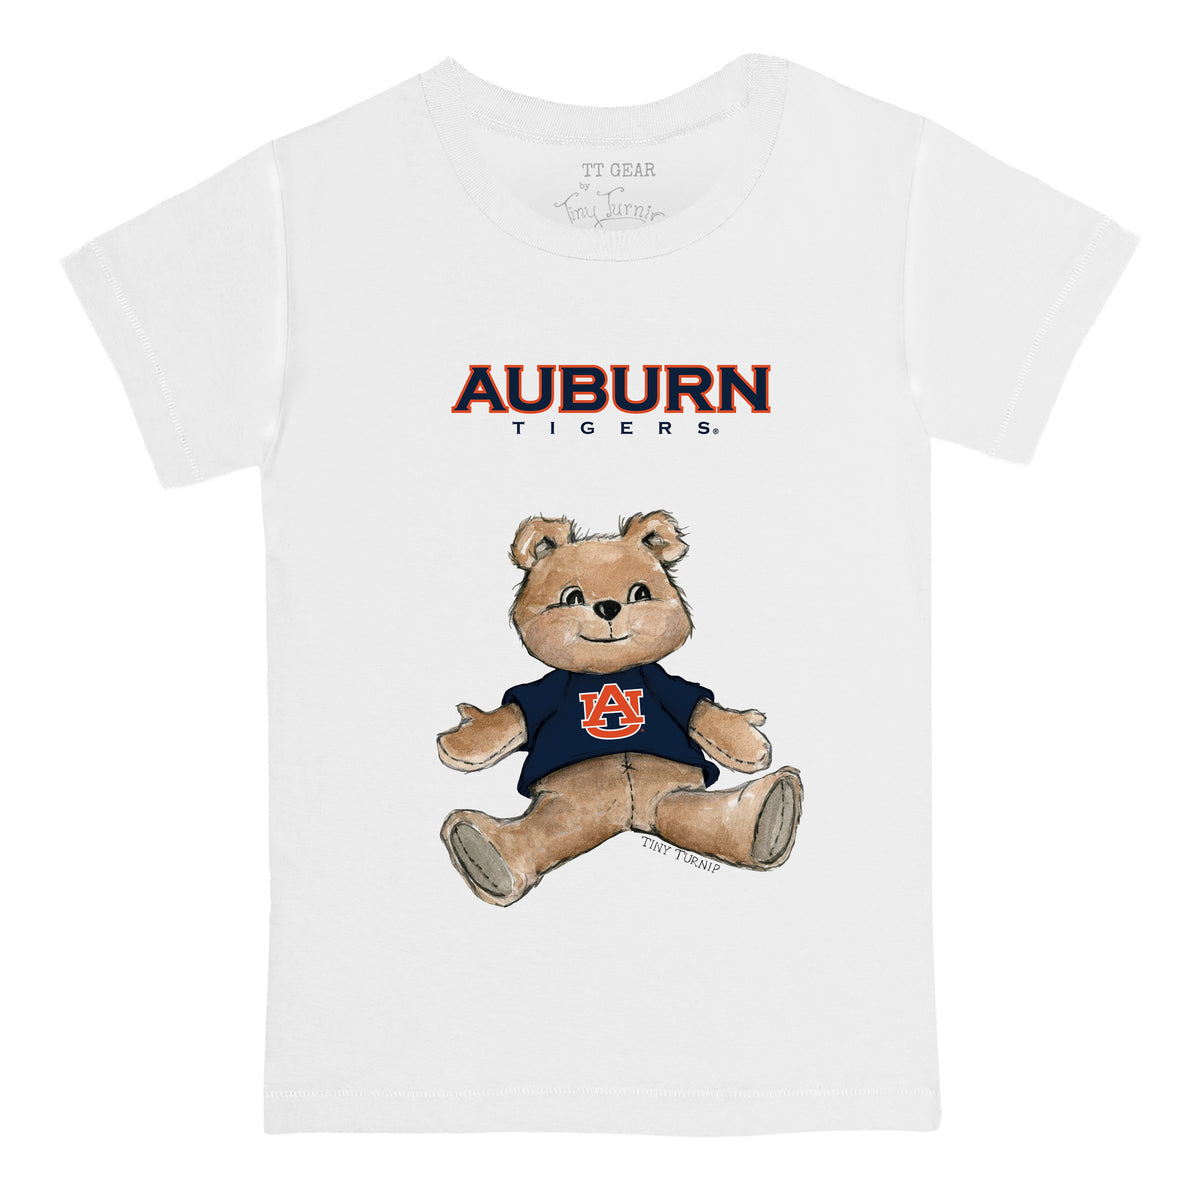 Auburn Tigers Teddy Tee Shirt